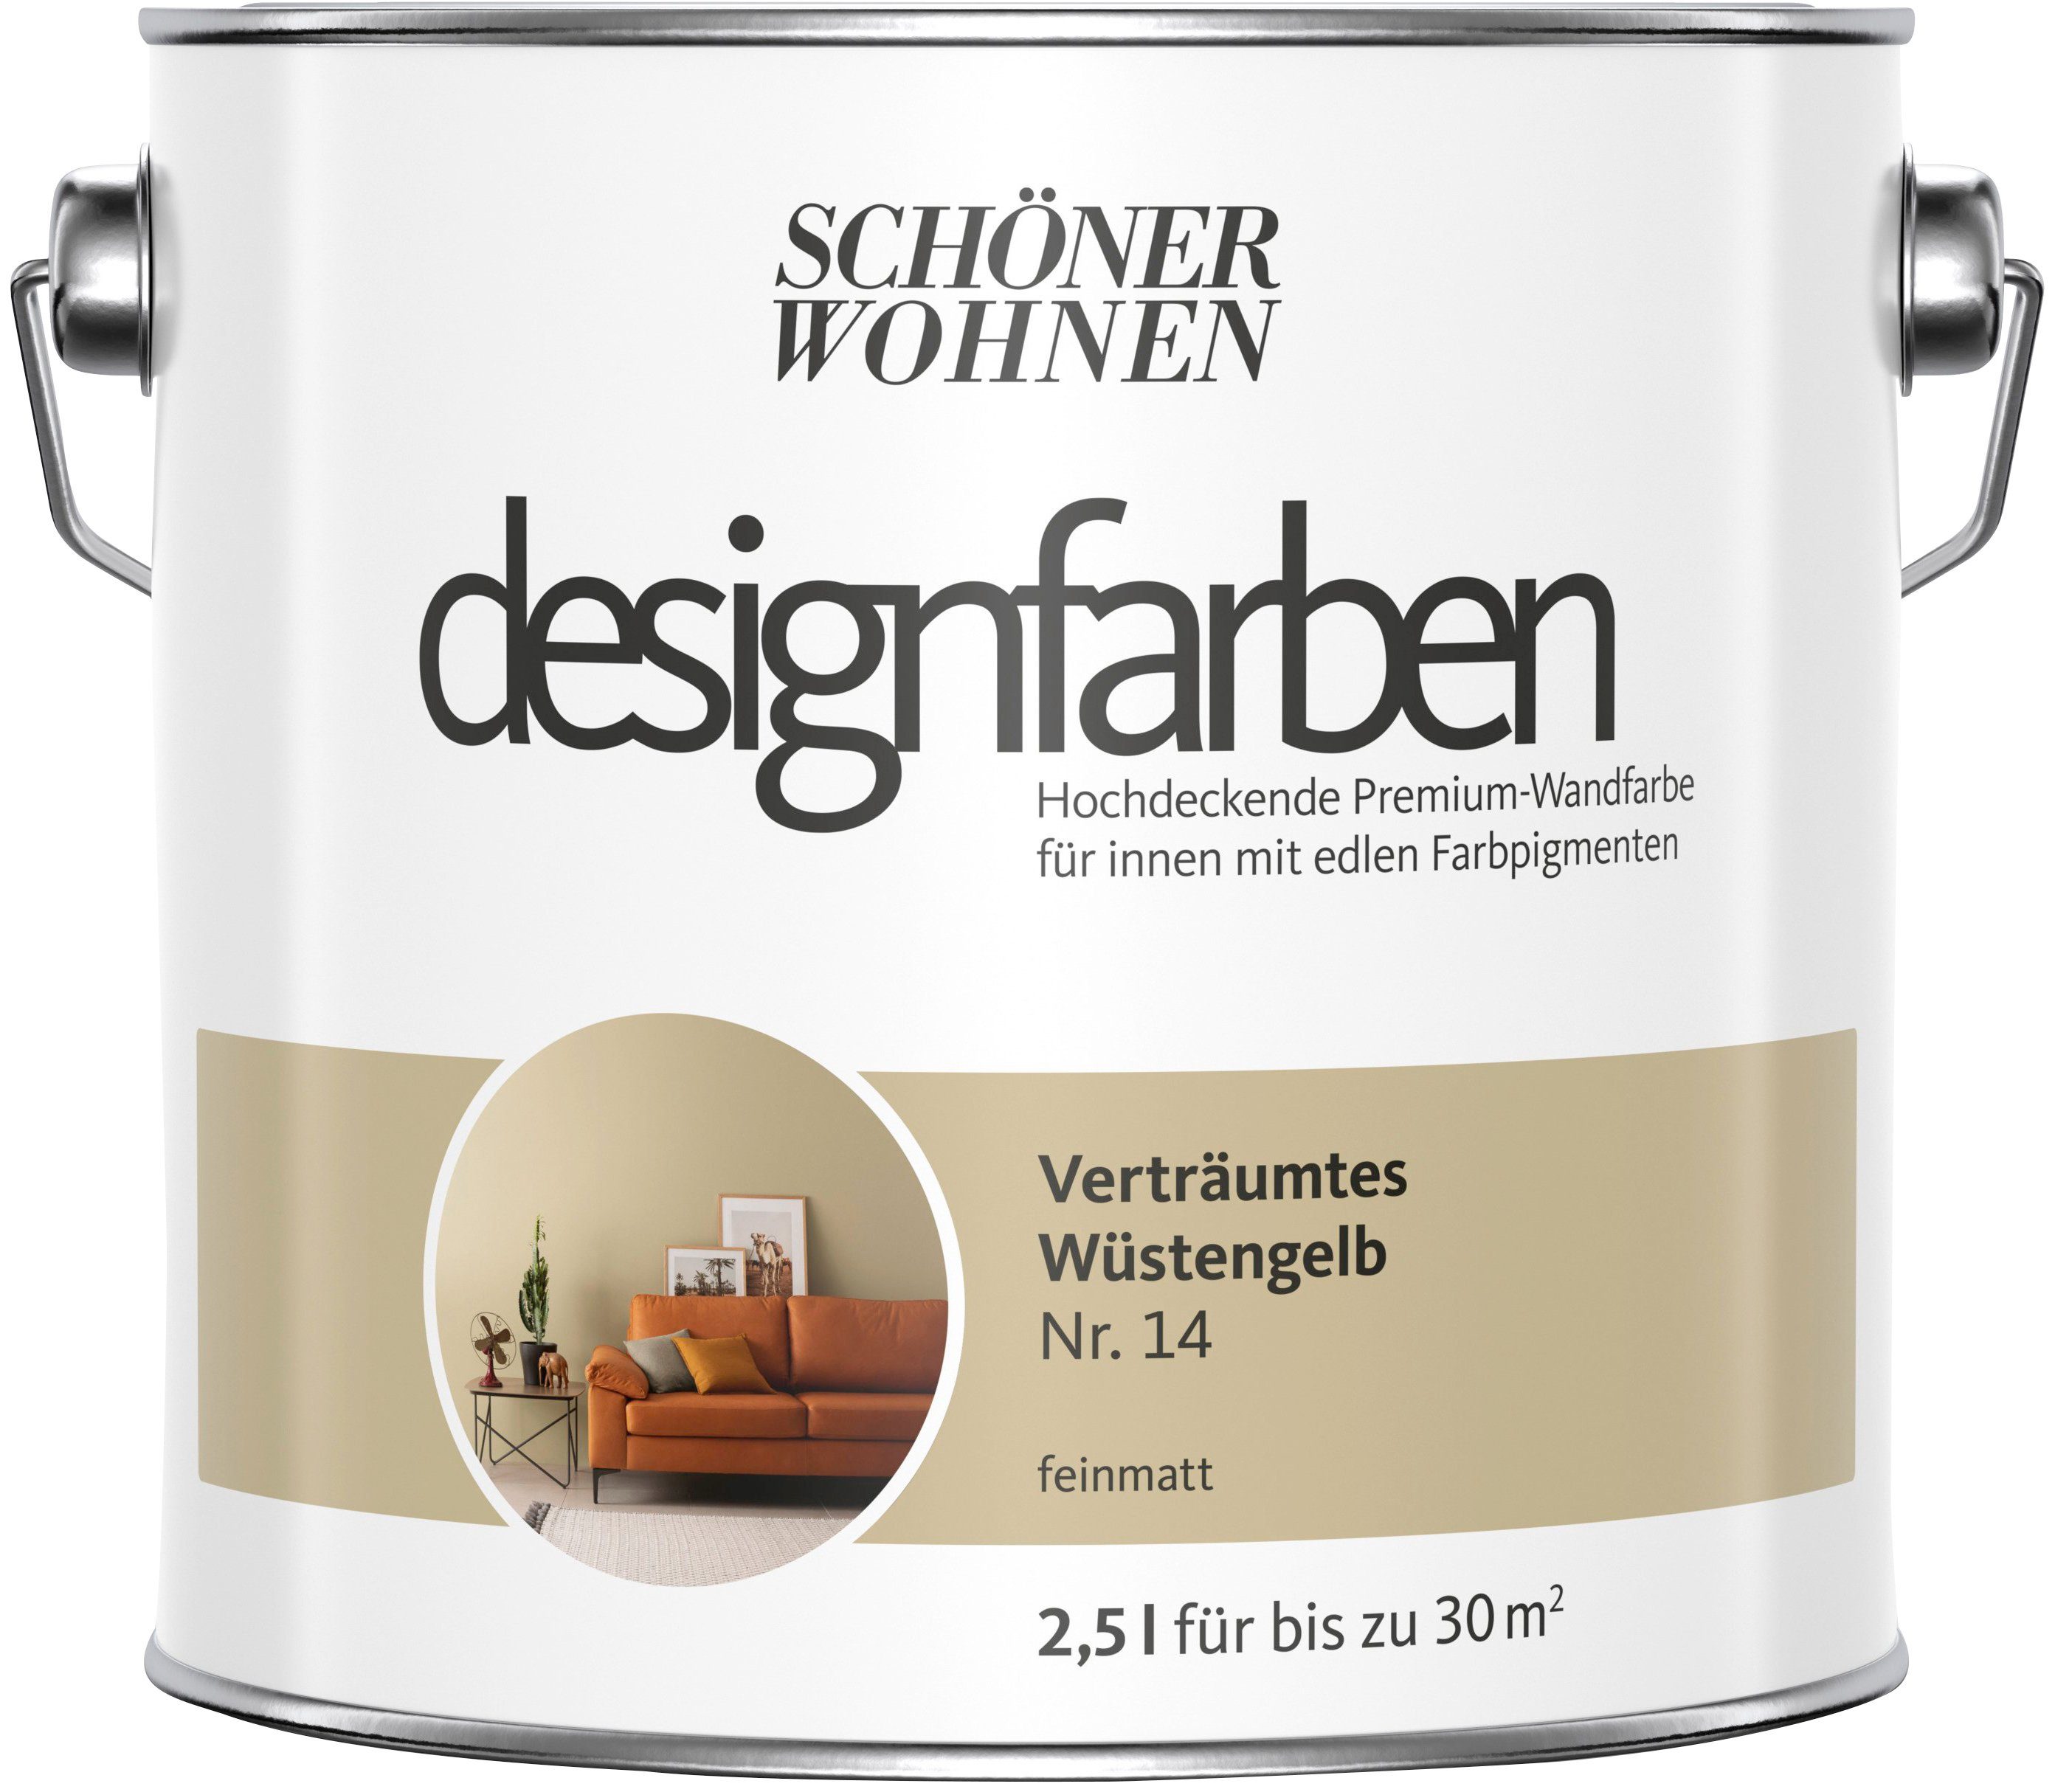 14, Verträumtes Wüstenbeige FARBE SCHÖNER Premium-Wandfarbe Nr. Wand- Designfarben, Deckenfarbe WOHNEN hochdeckende und